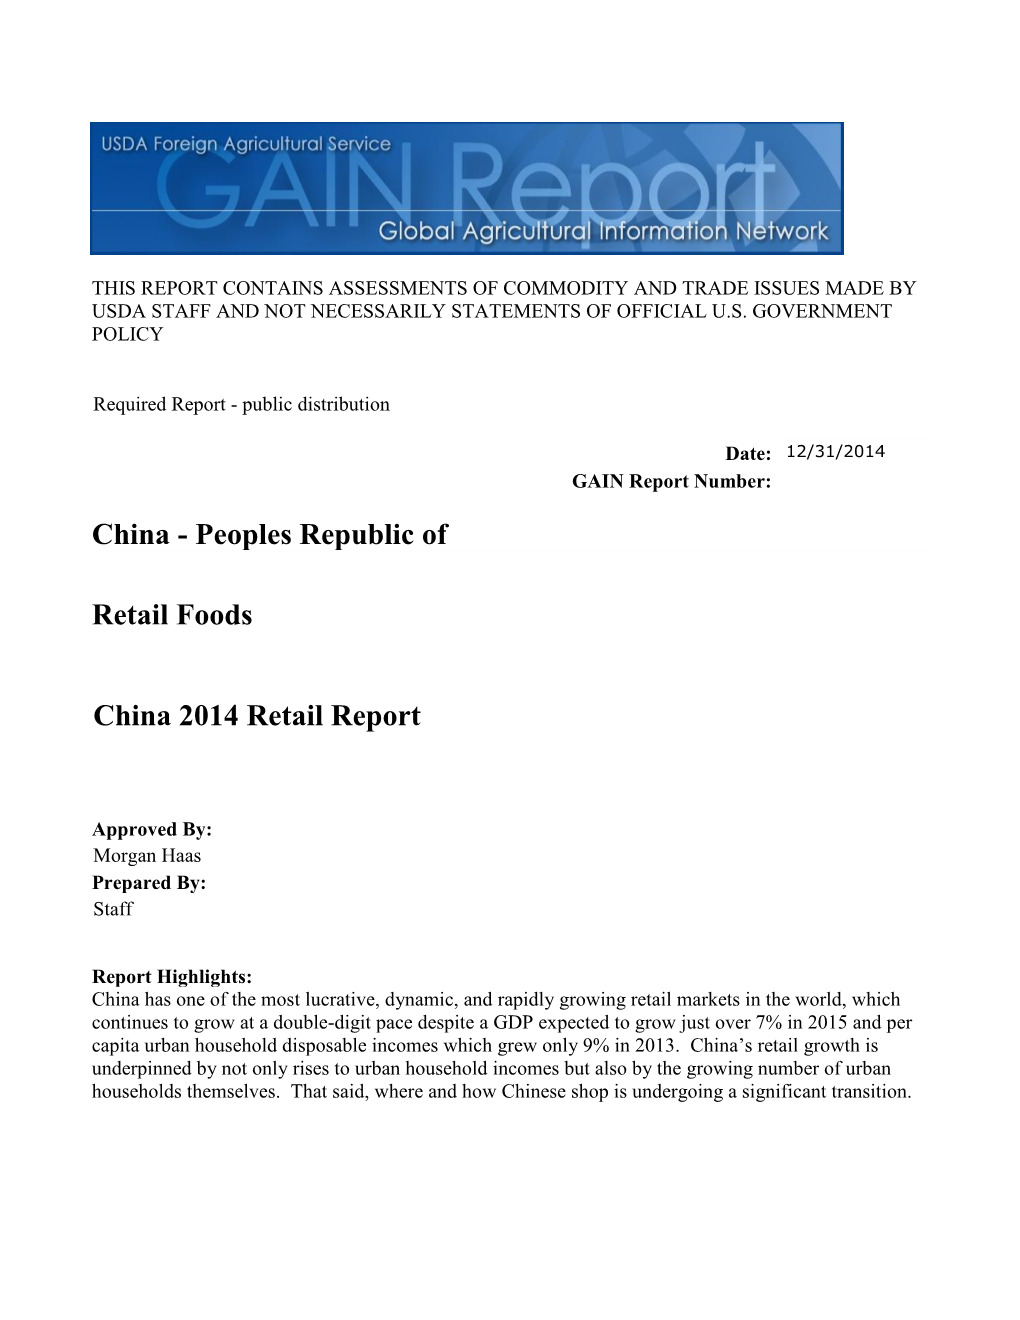 China 2014 Retail Report Retail Foods China